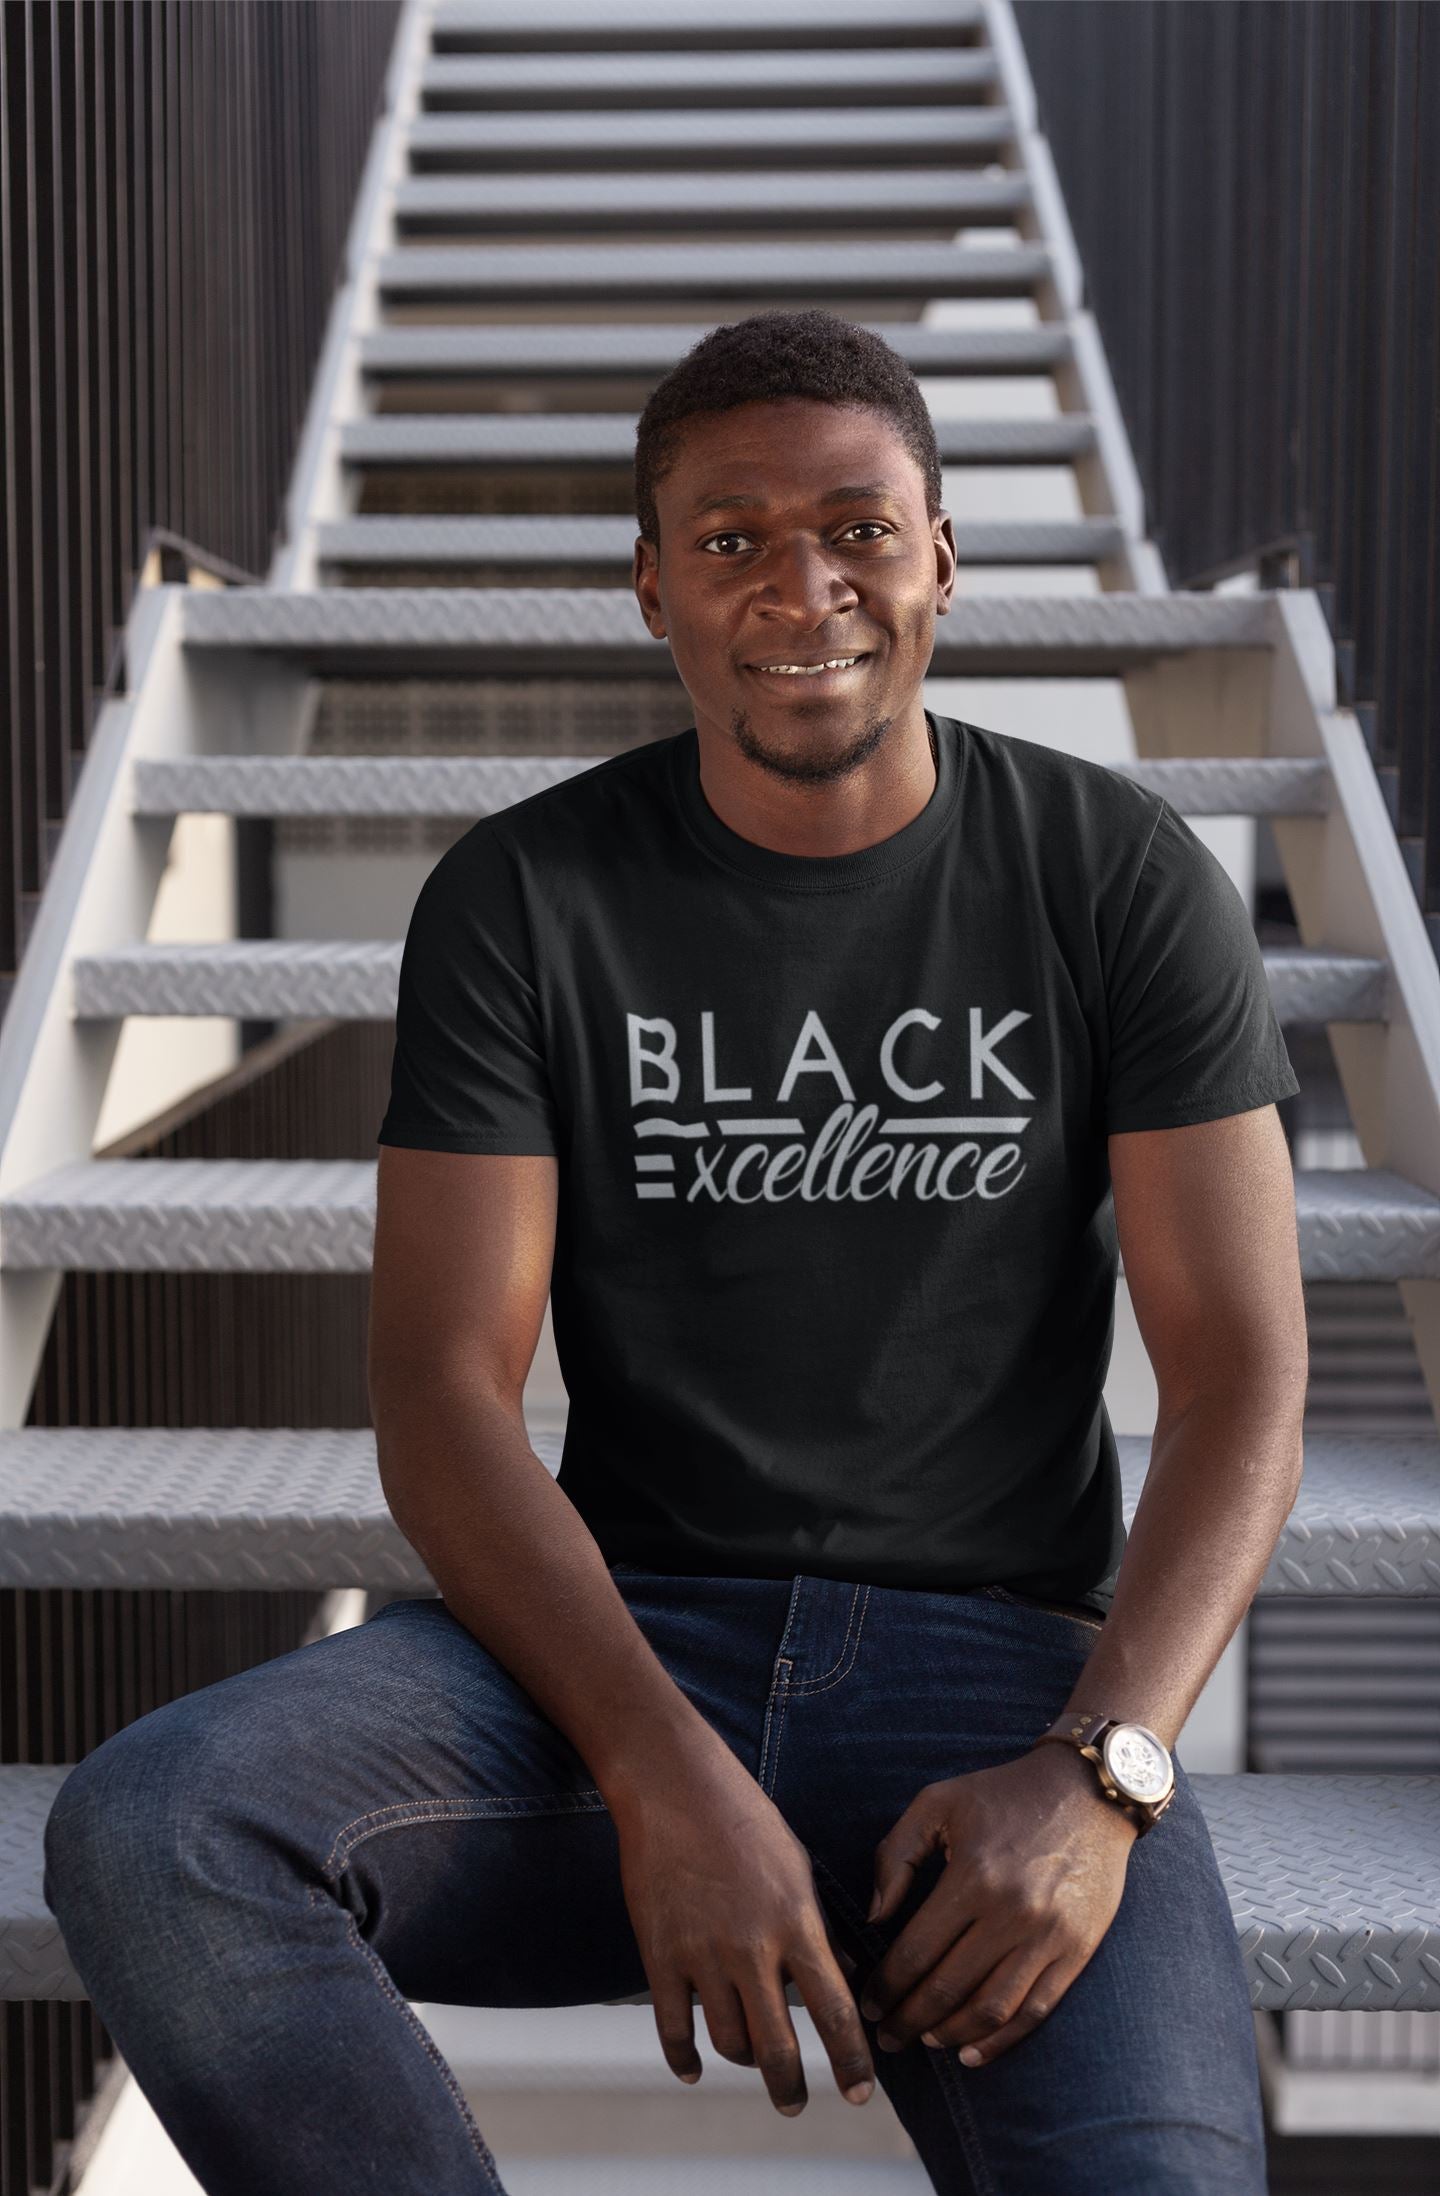 Black Excellence T-Shirt Shirt B1ack By Design LLC 